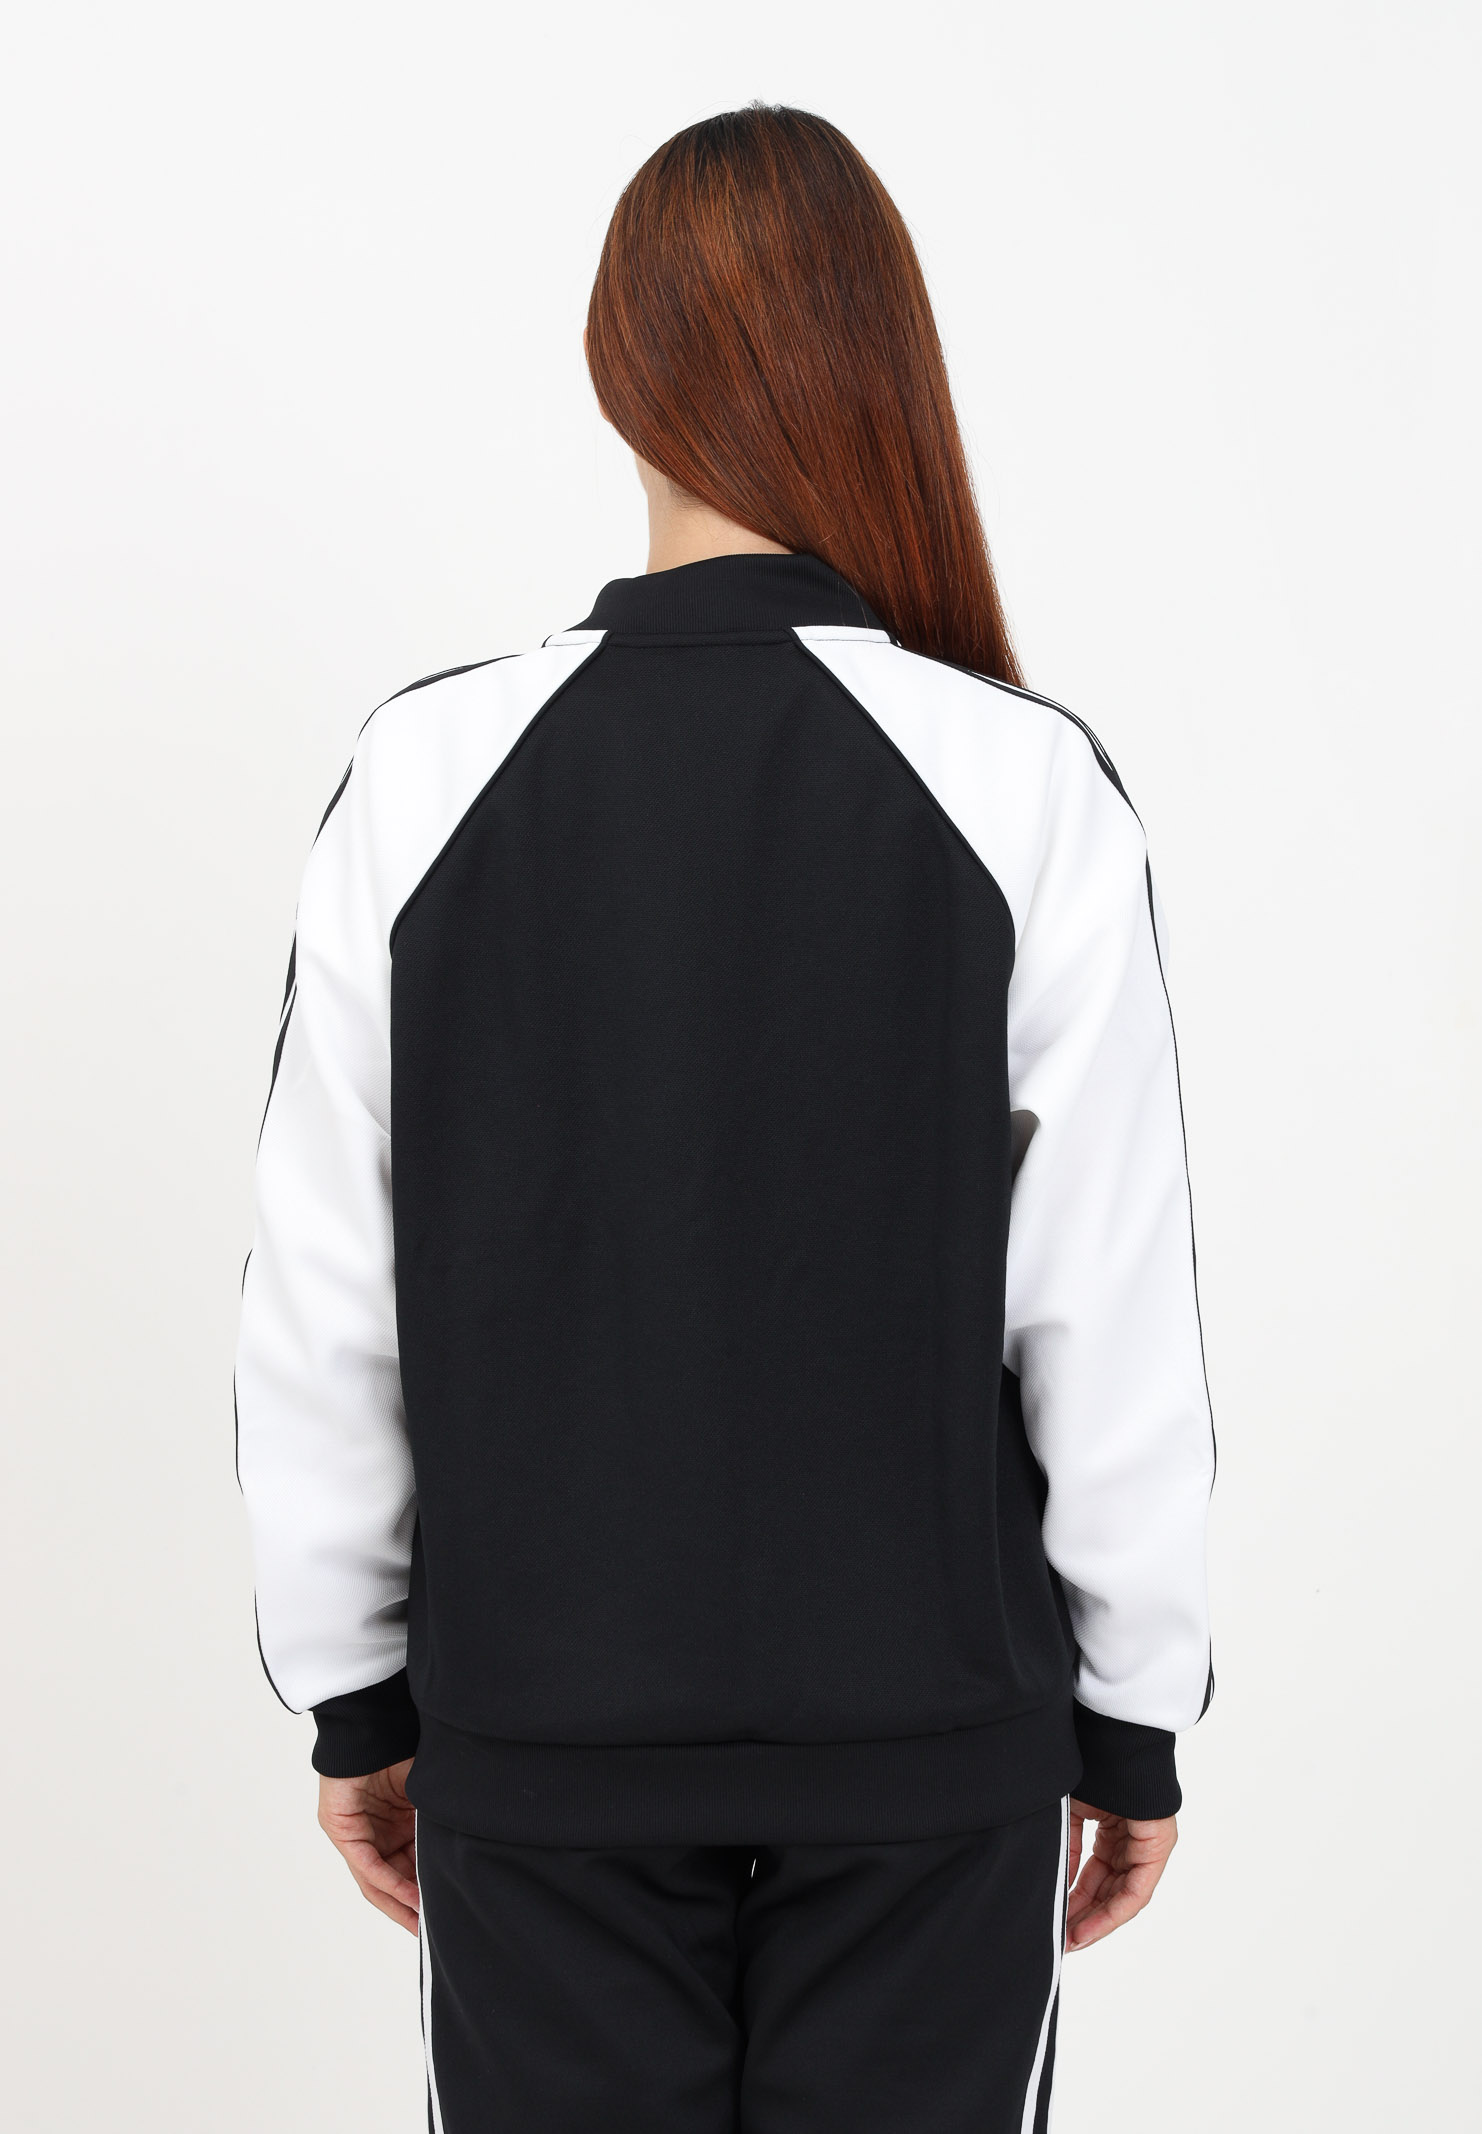 Black zip-up sweatshirt for women ADIDAS ORIGINALS | IK4026.